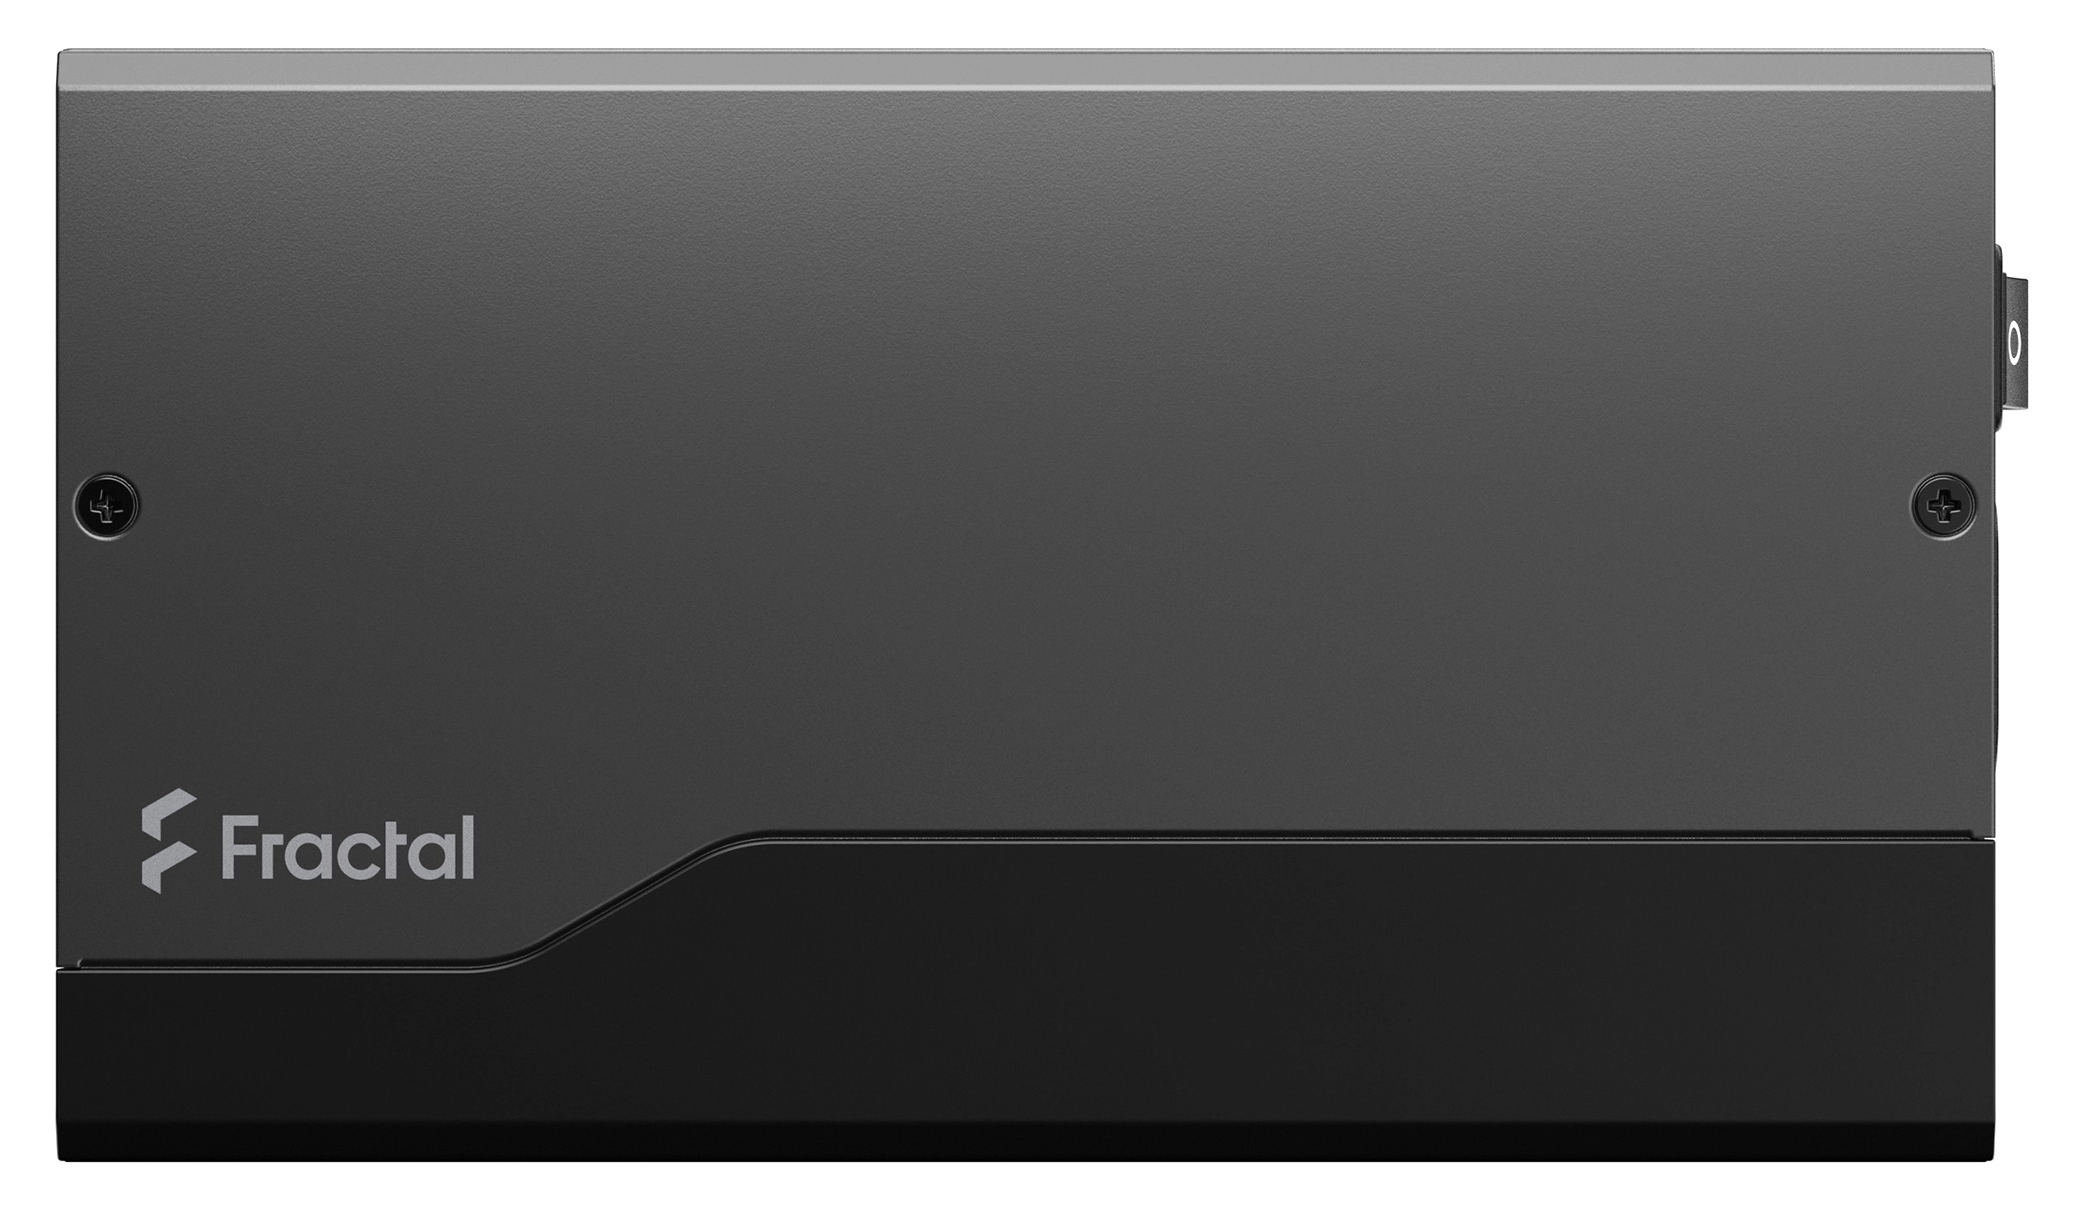 Fractal Design - Fonte Fractal Design Ion+ 2 660W 80+ Platinum Full Modular